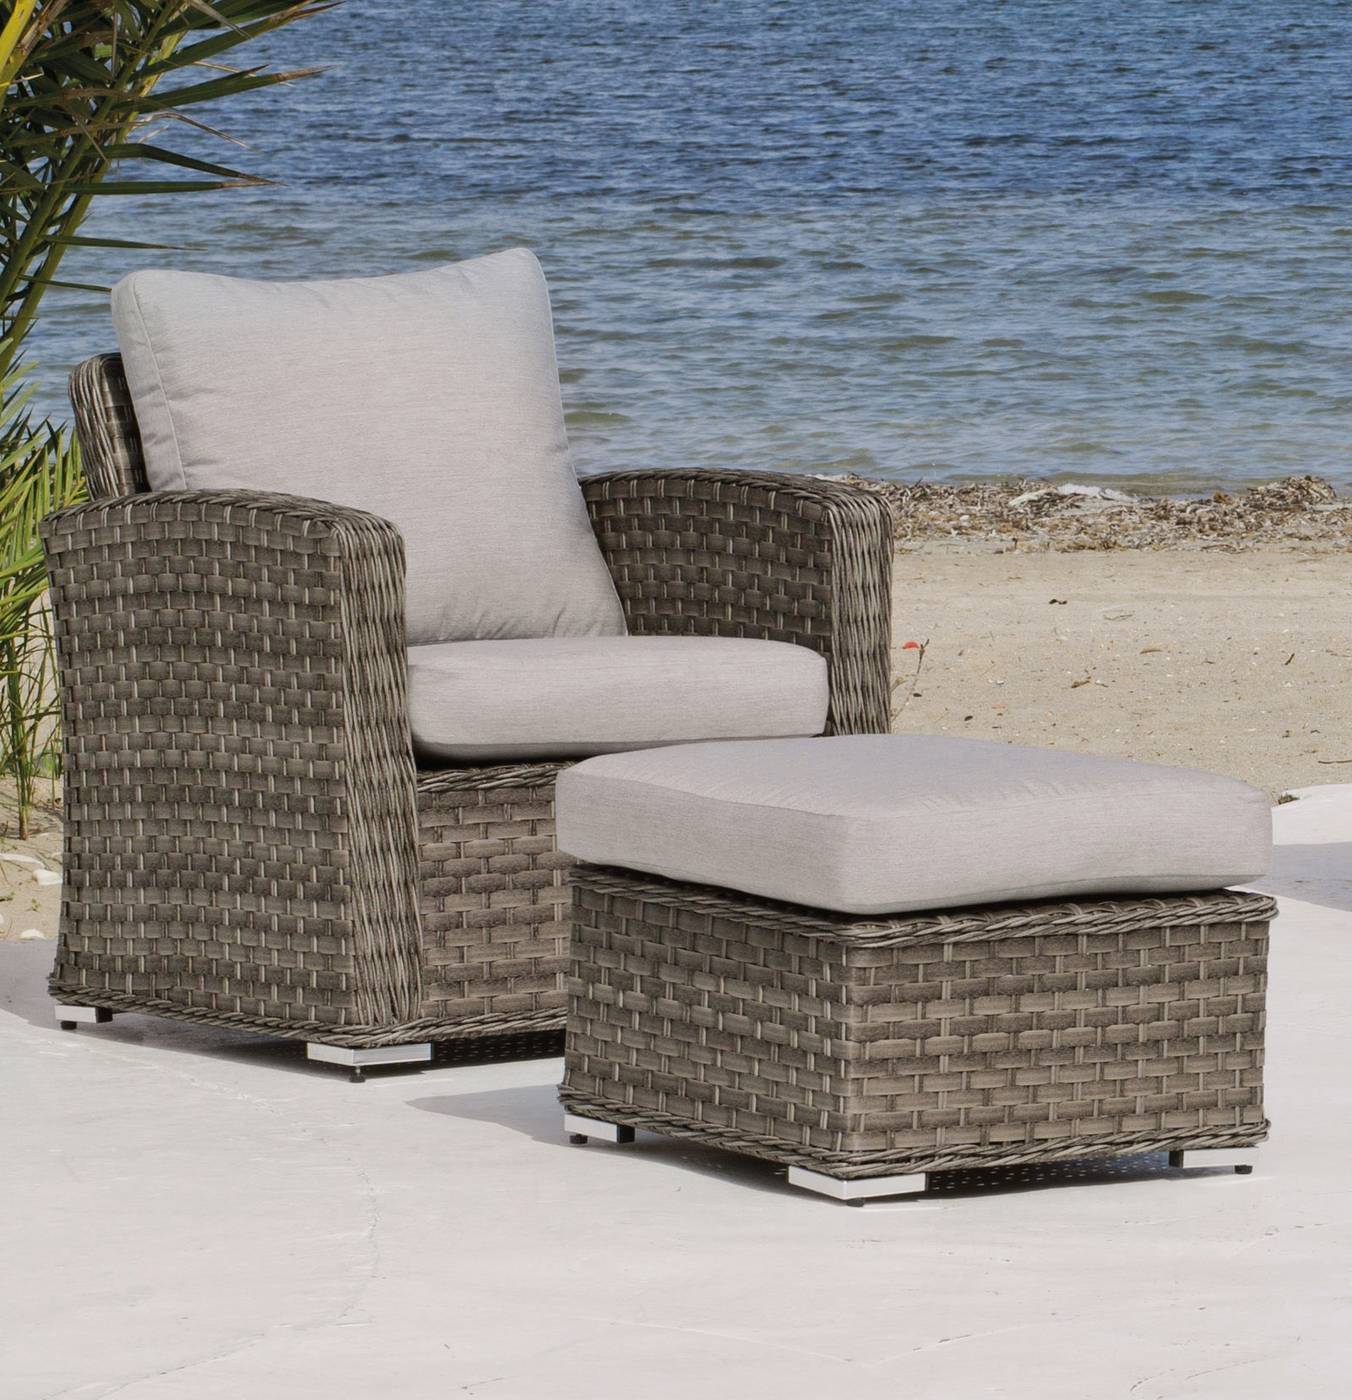 Set Médula Luxe Ocean-10 - 1 sofá de 3 plazas + 2 sillones + 1 mesa de centro + 2 reposapiés + cojines